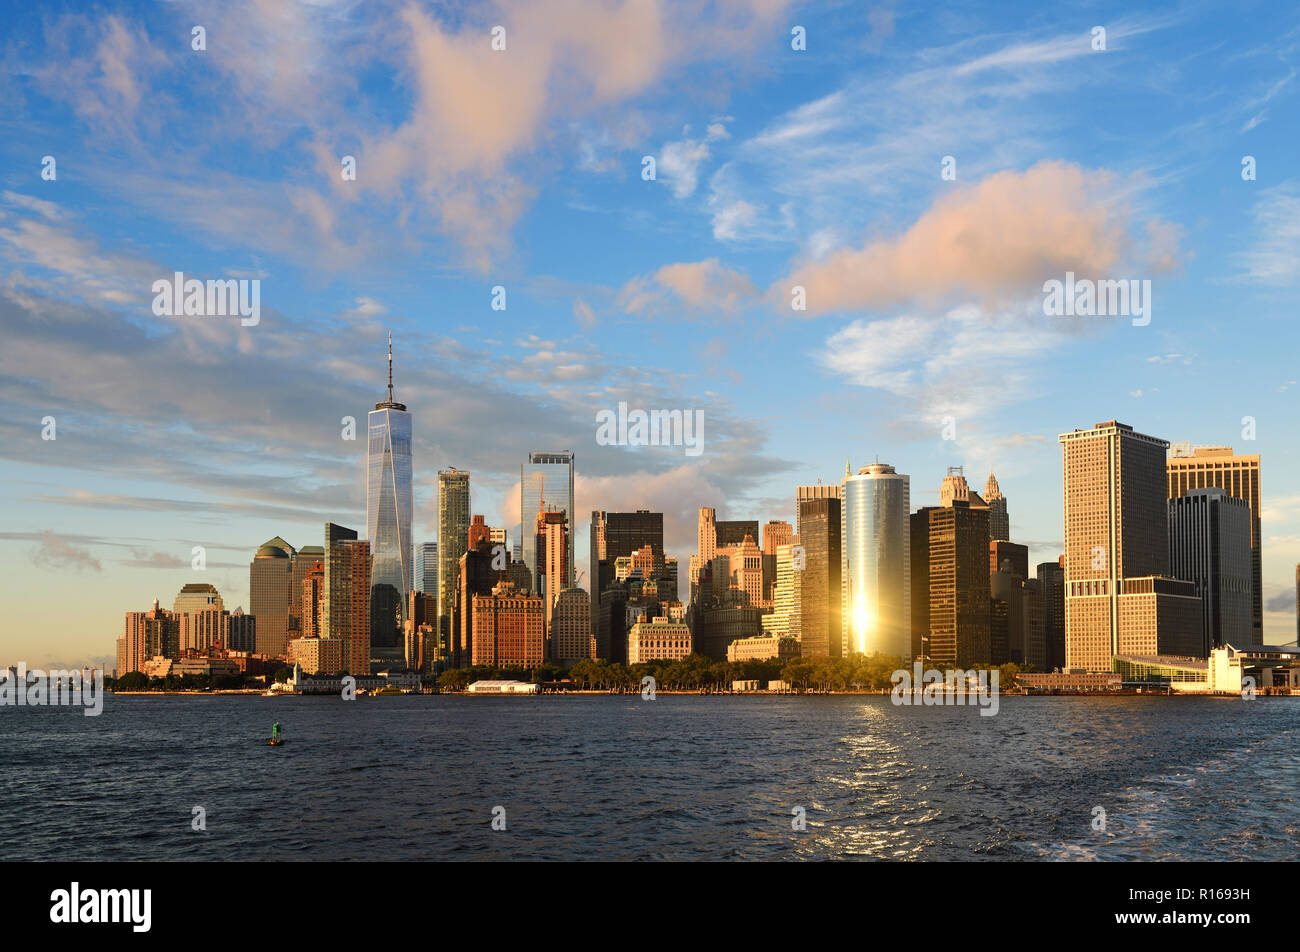 Punta sur de Manhattan con el One World Trade Center, East River, la ciudad de Nueva York, EE.UU. Foto de stock